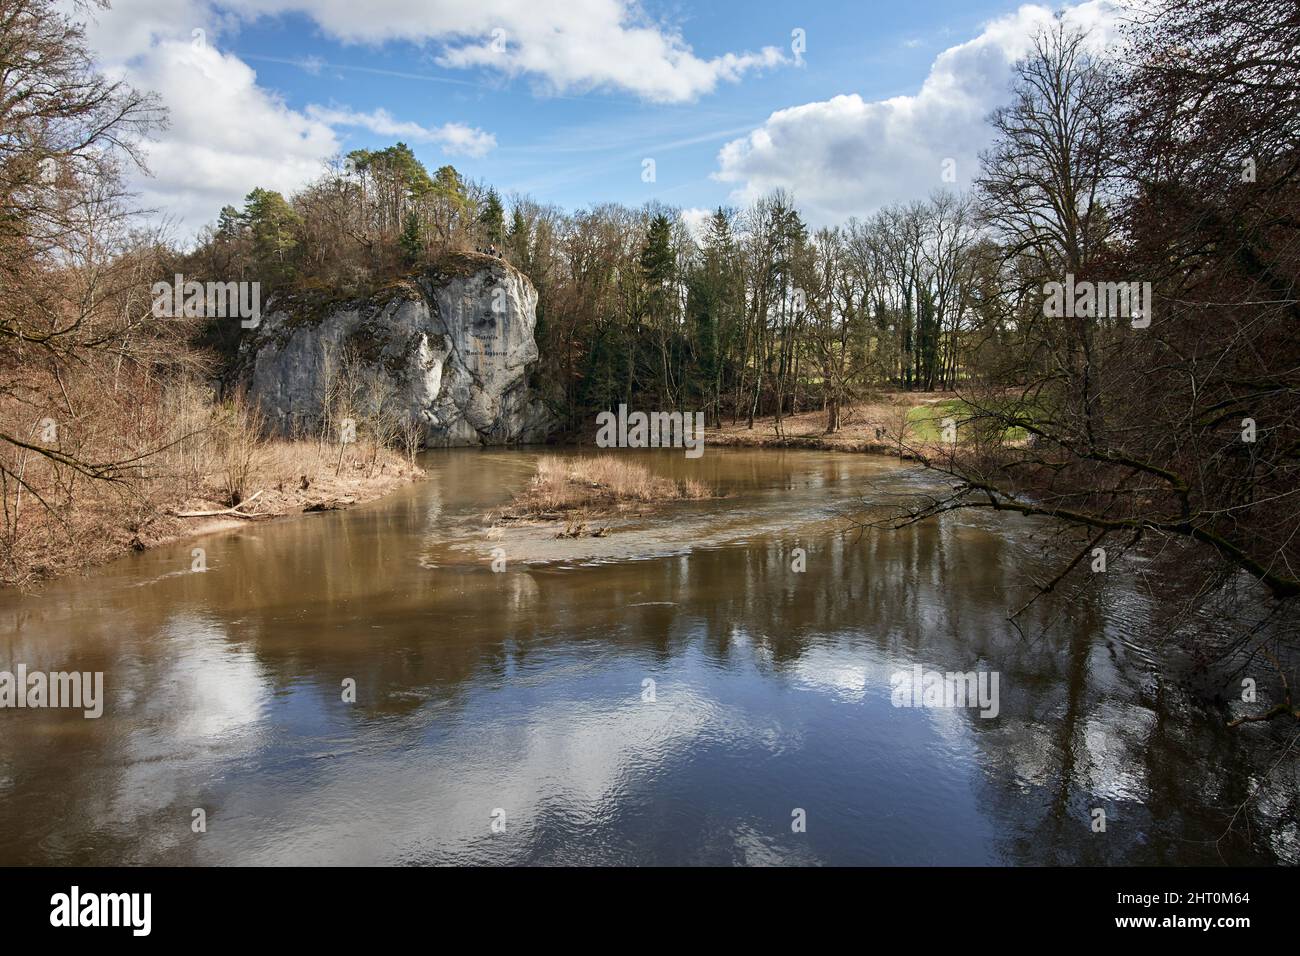 Amalienfelsen roca en el río Danubio en el Parque Princely cerca de Inzigkofen, Sigmaringen, Alemania, Europa. Foto de stock